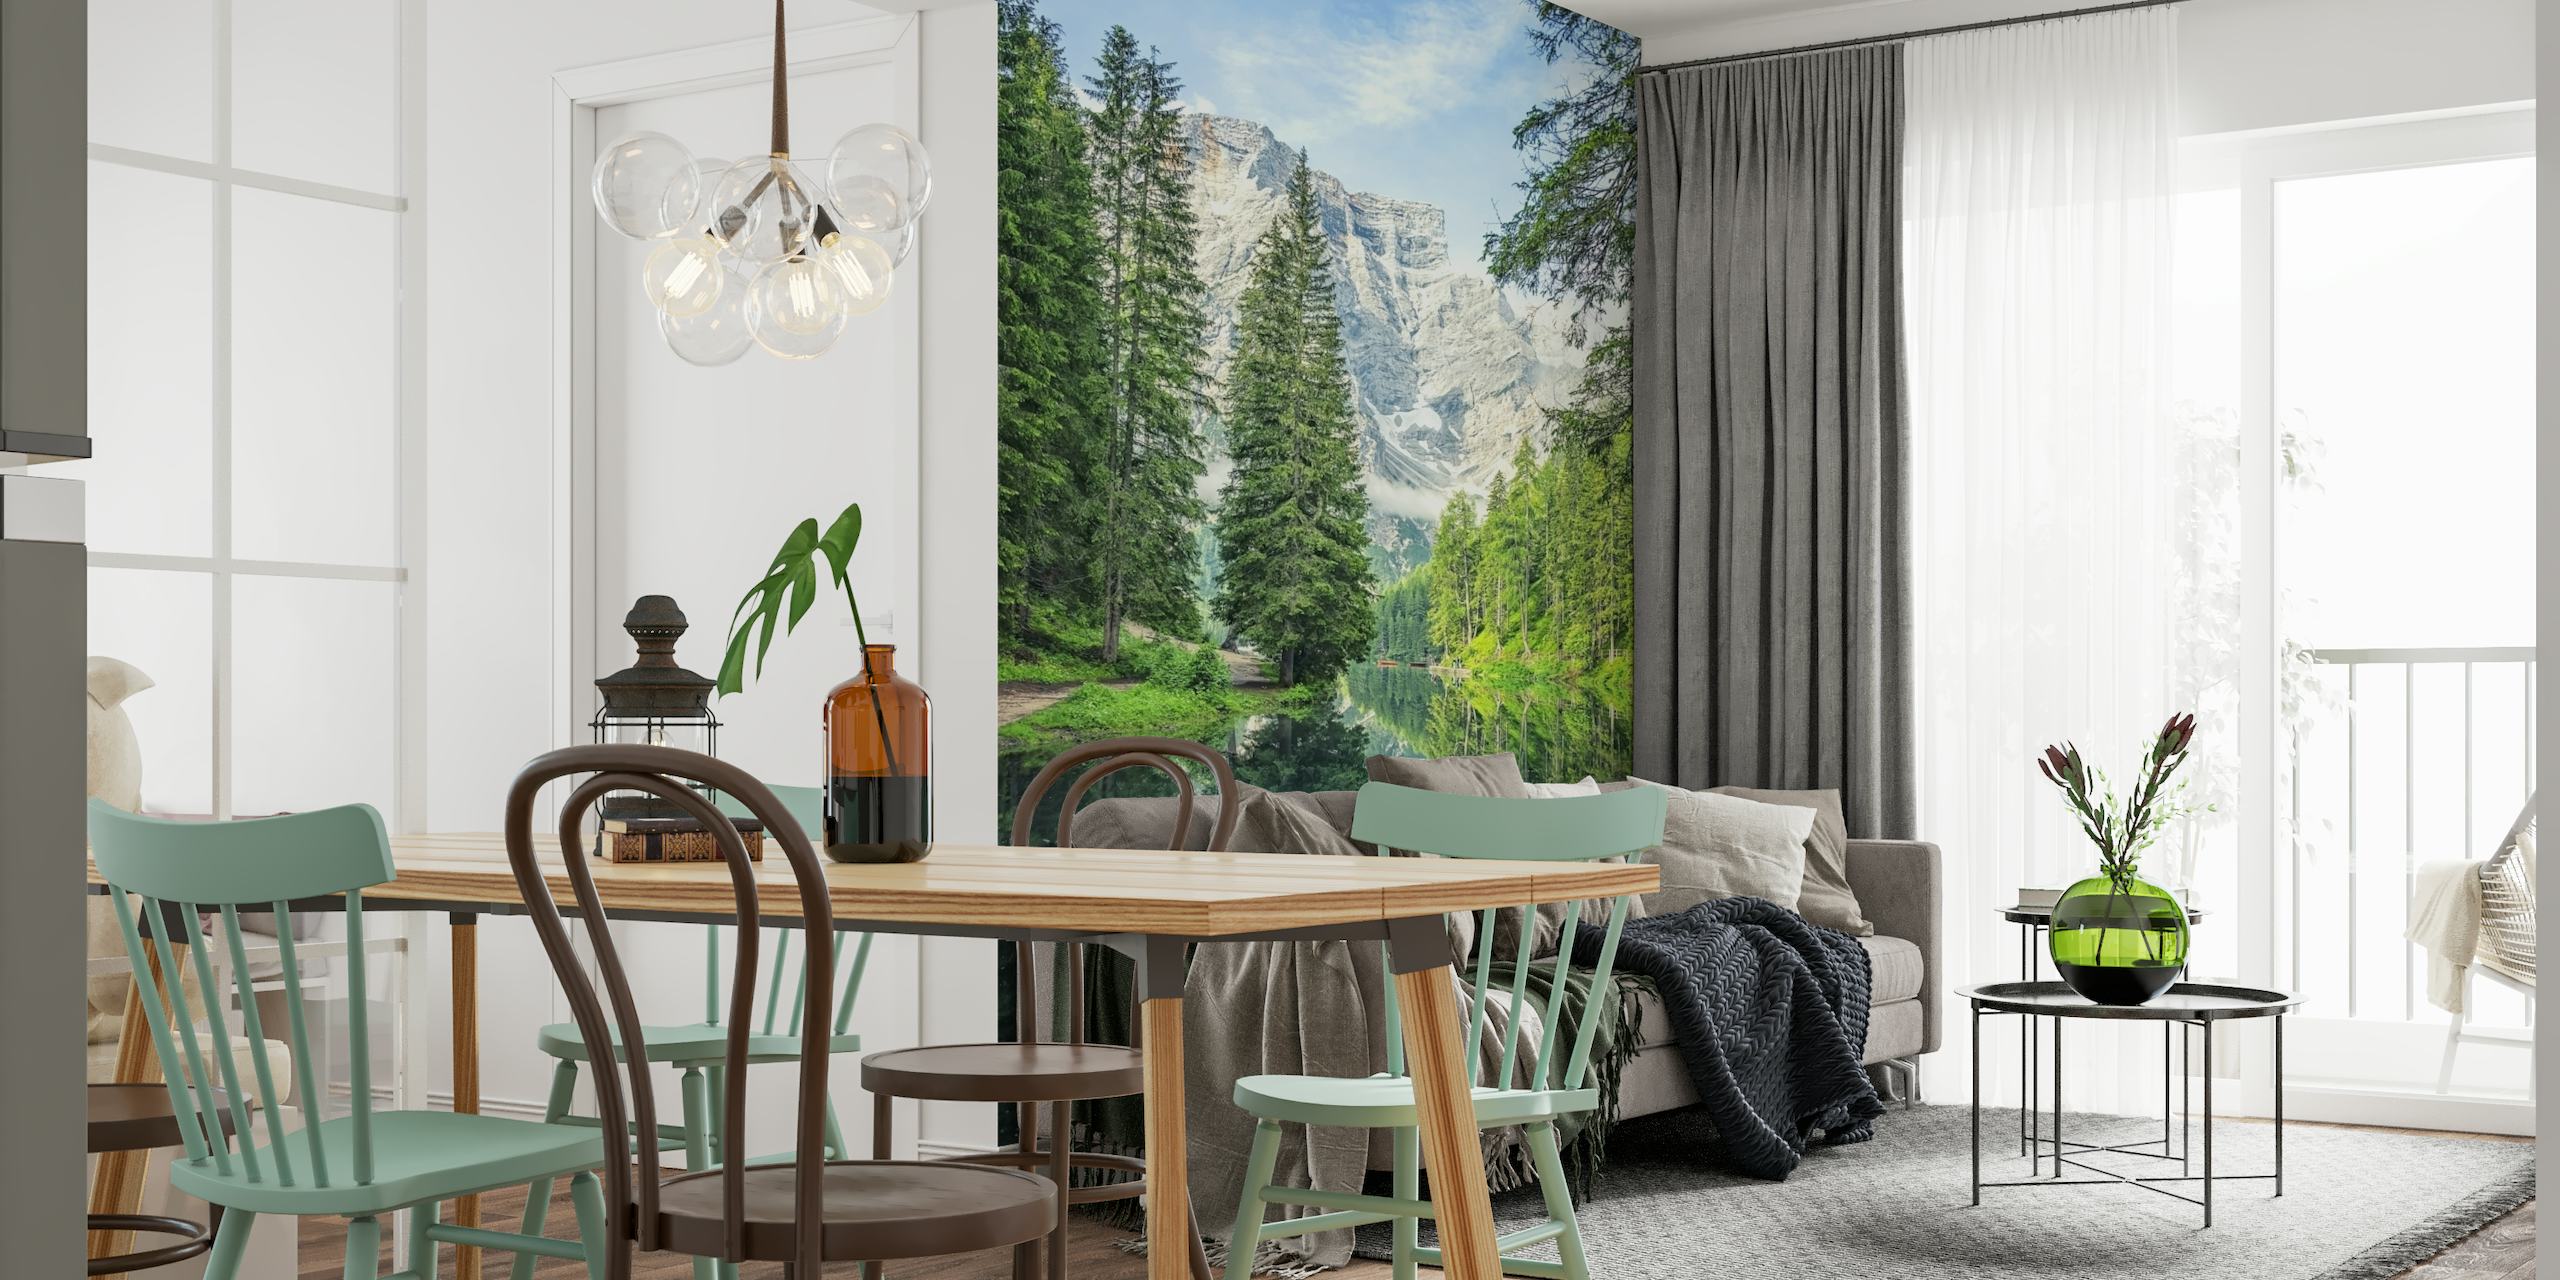 Mural de Pragser Wildsee que muestra el lago alpino y las montañas Dolomitas